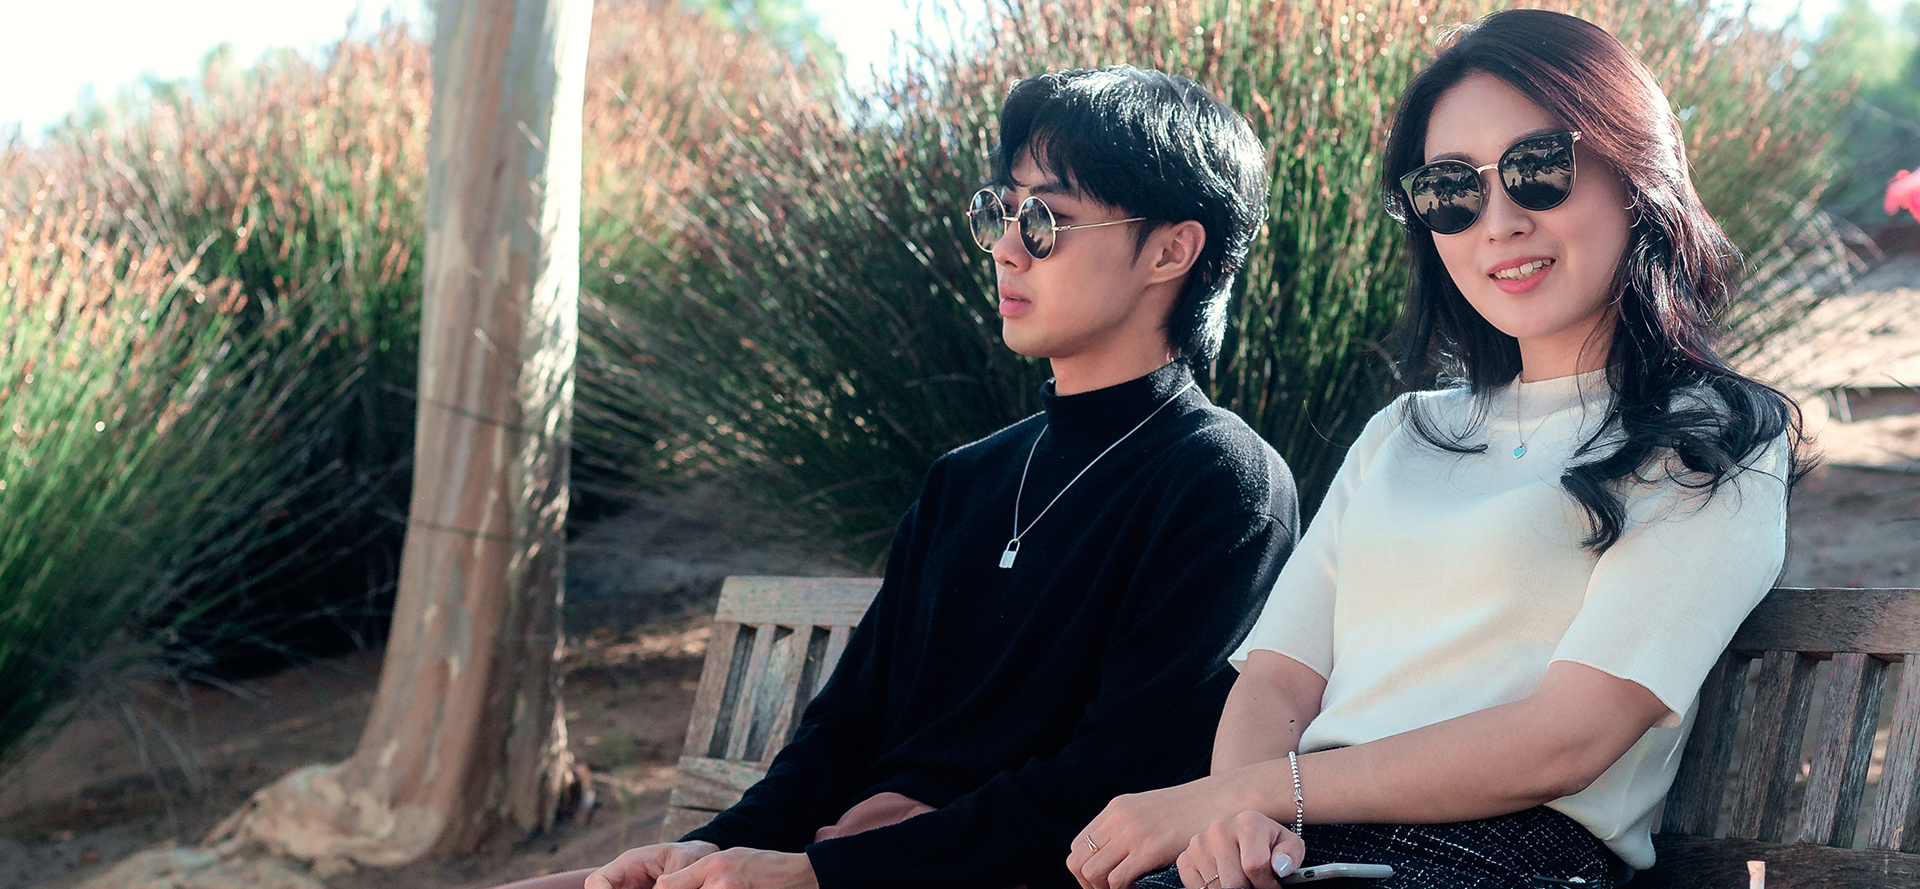 O casal asiático de óculos senta-se num banco.